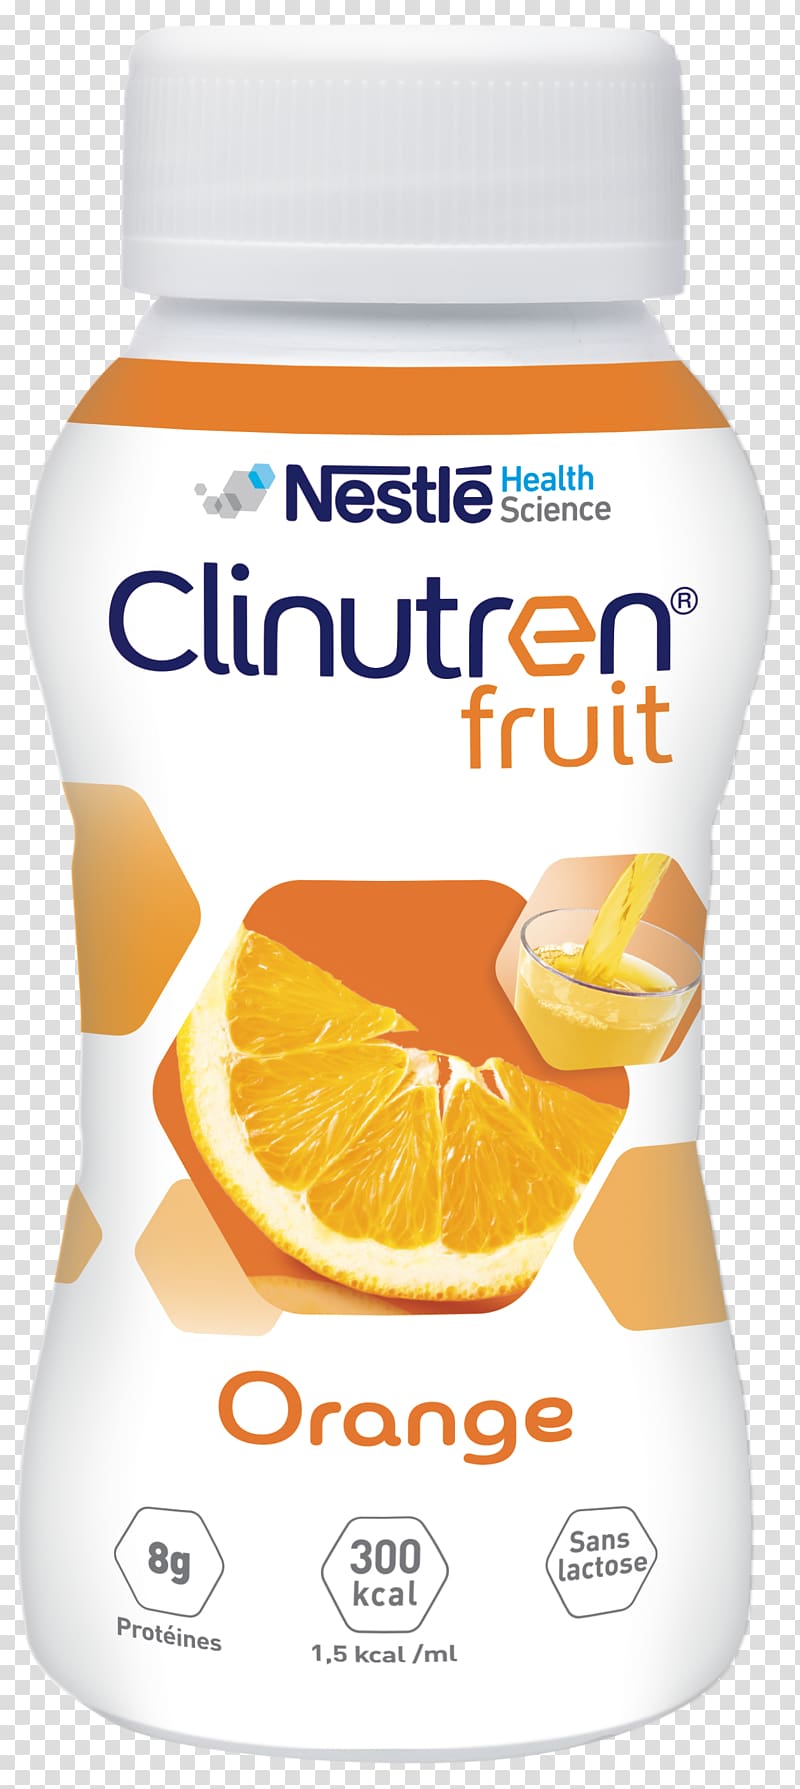 Dictionnaire Vidal Orange Fruit Juice Flavor, orange transparent background PNG clipart